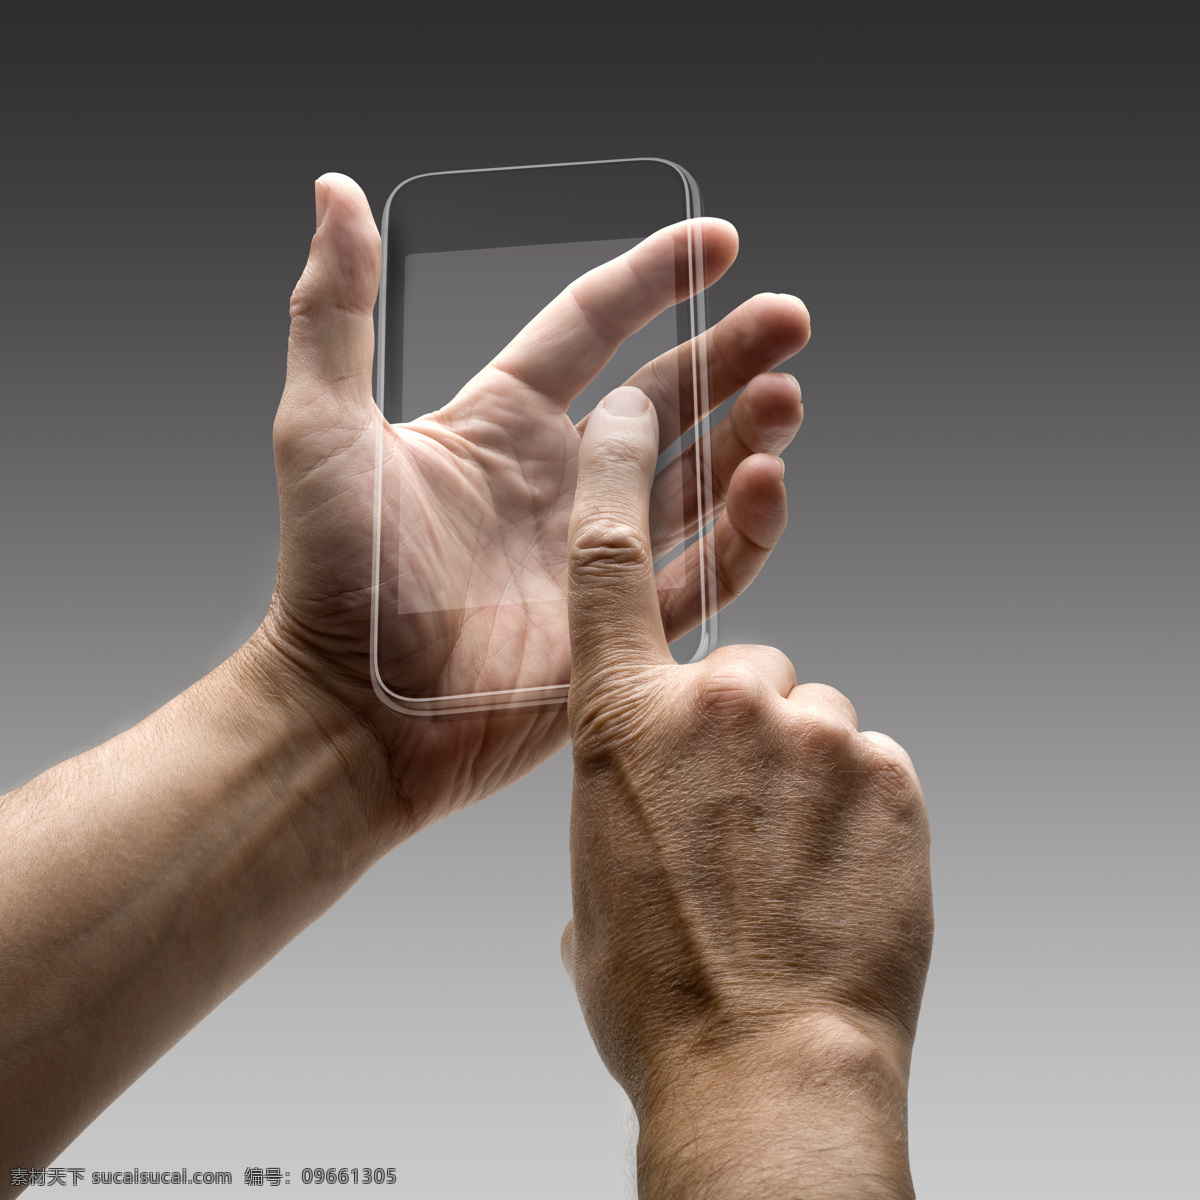 智能 手机 手 手势 智能手机 触摸屏 屏幕 高科技 未来科技 科技背景 手机图片 现代科技